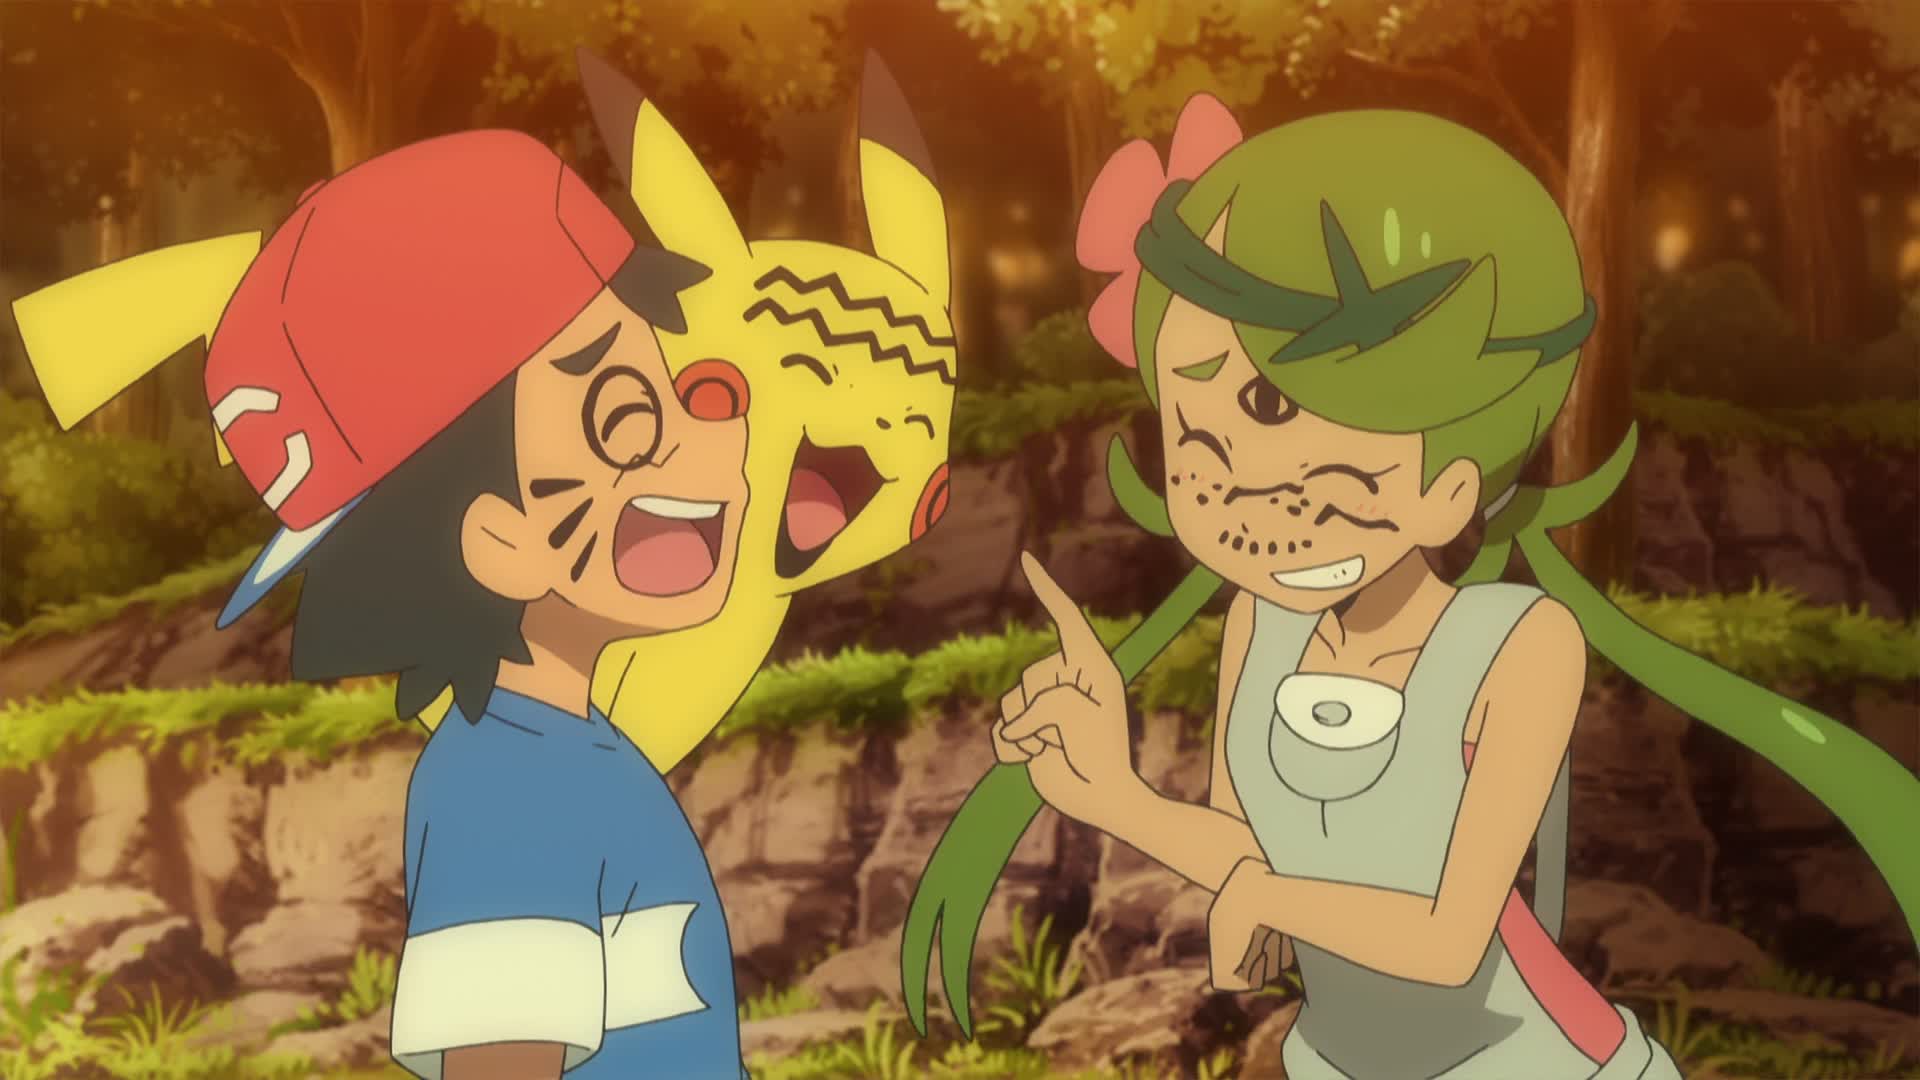 Pokemon Sun & Moon Episode 42 - An Alola! In Kanto! Takeshi and